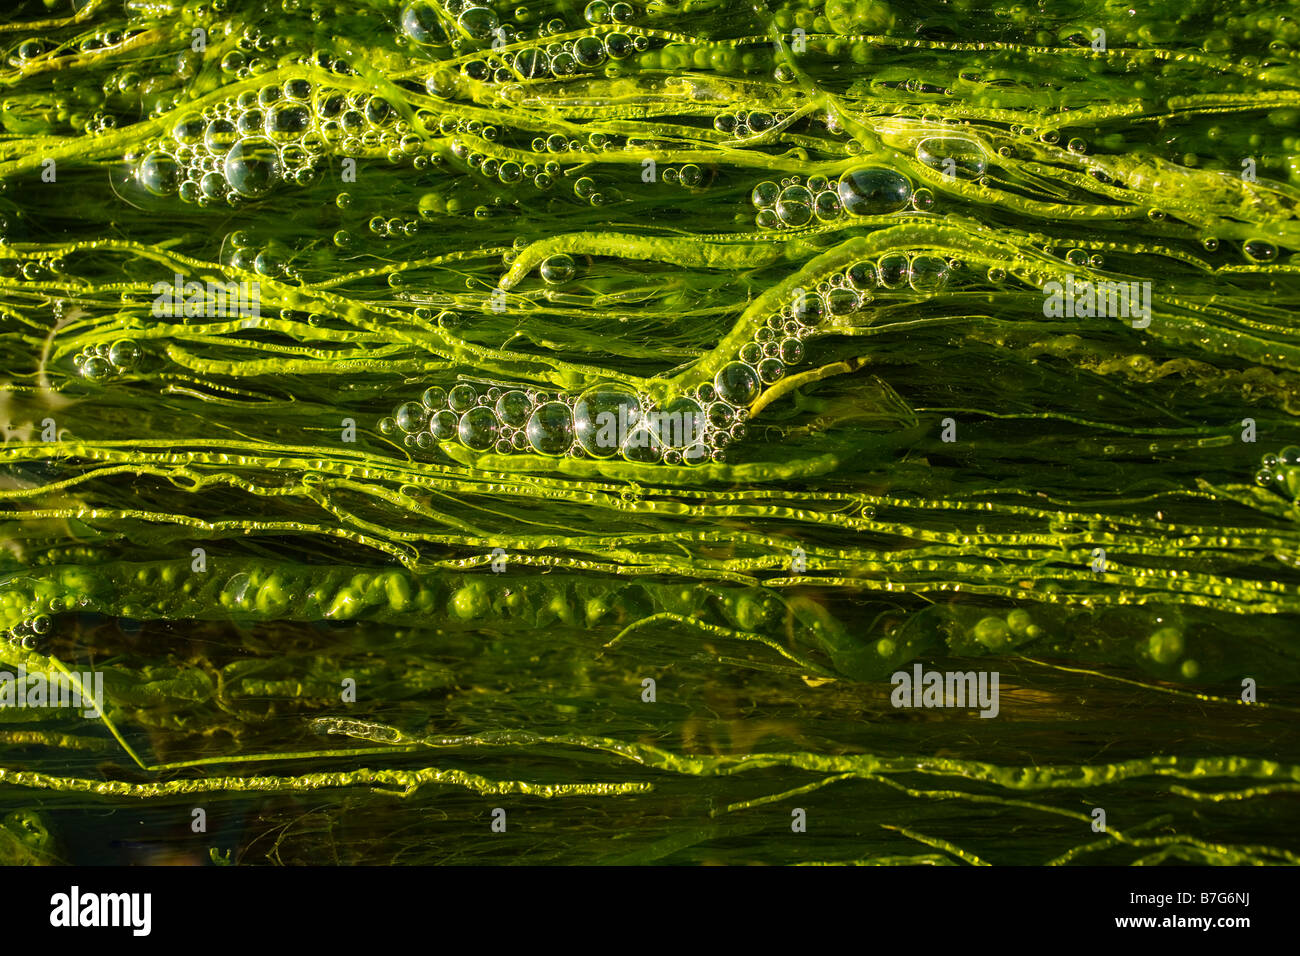 Burbujas floten entre las hebras de la mala hierba acuática en un arroyo. Foto de stock